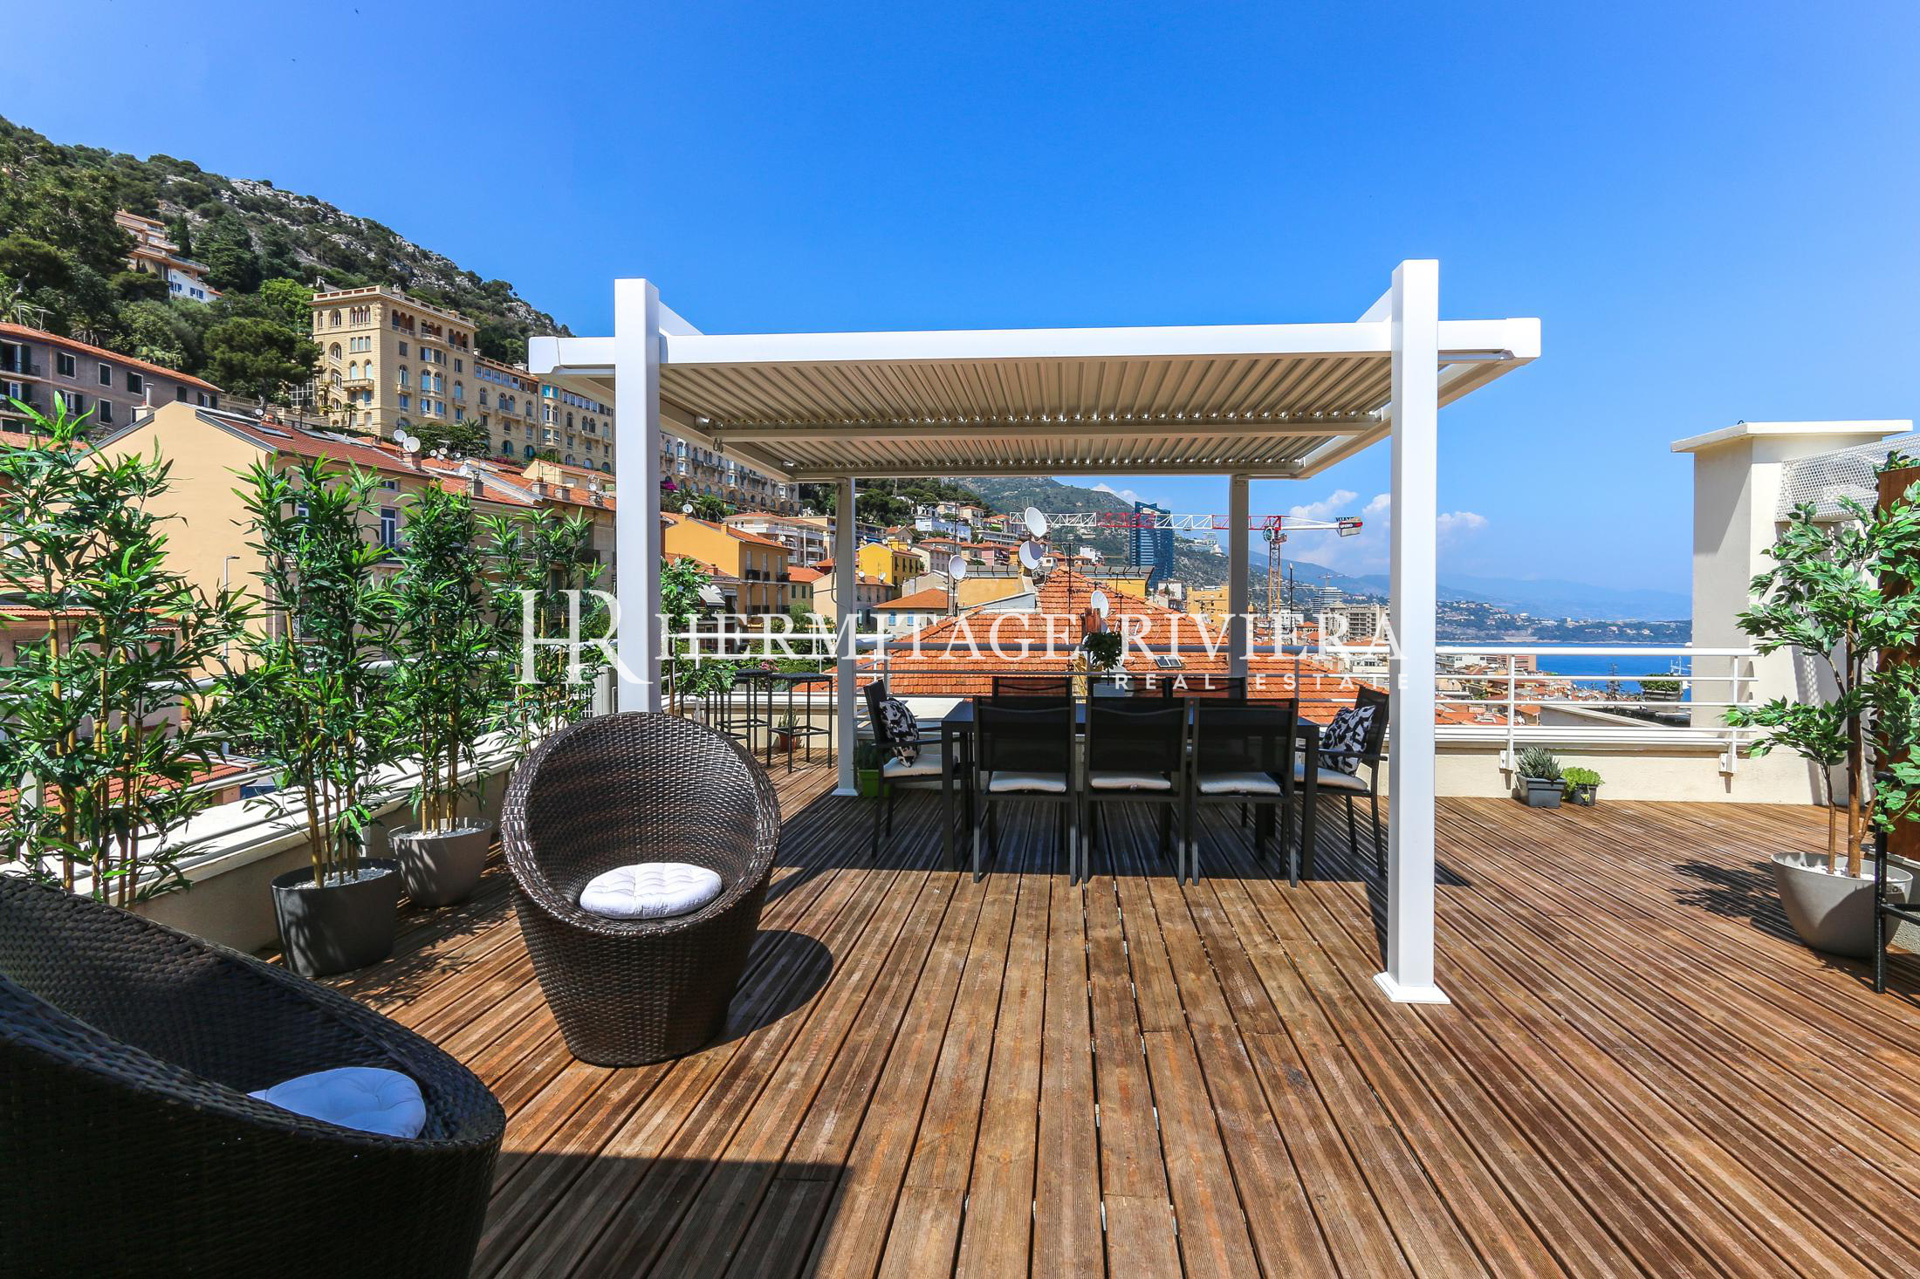 Penthouse-duplex renovated overlooking Monaco (image 4)